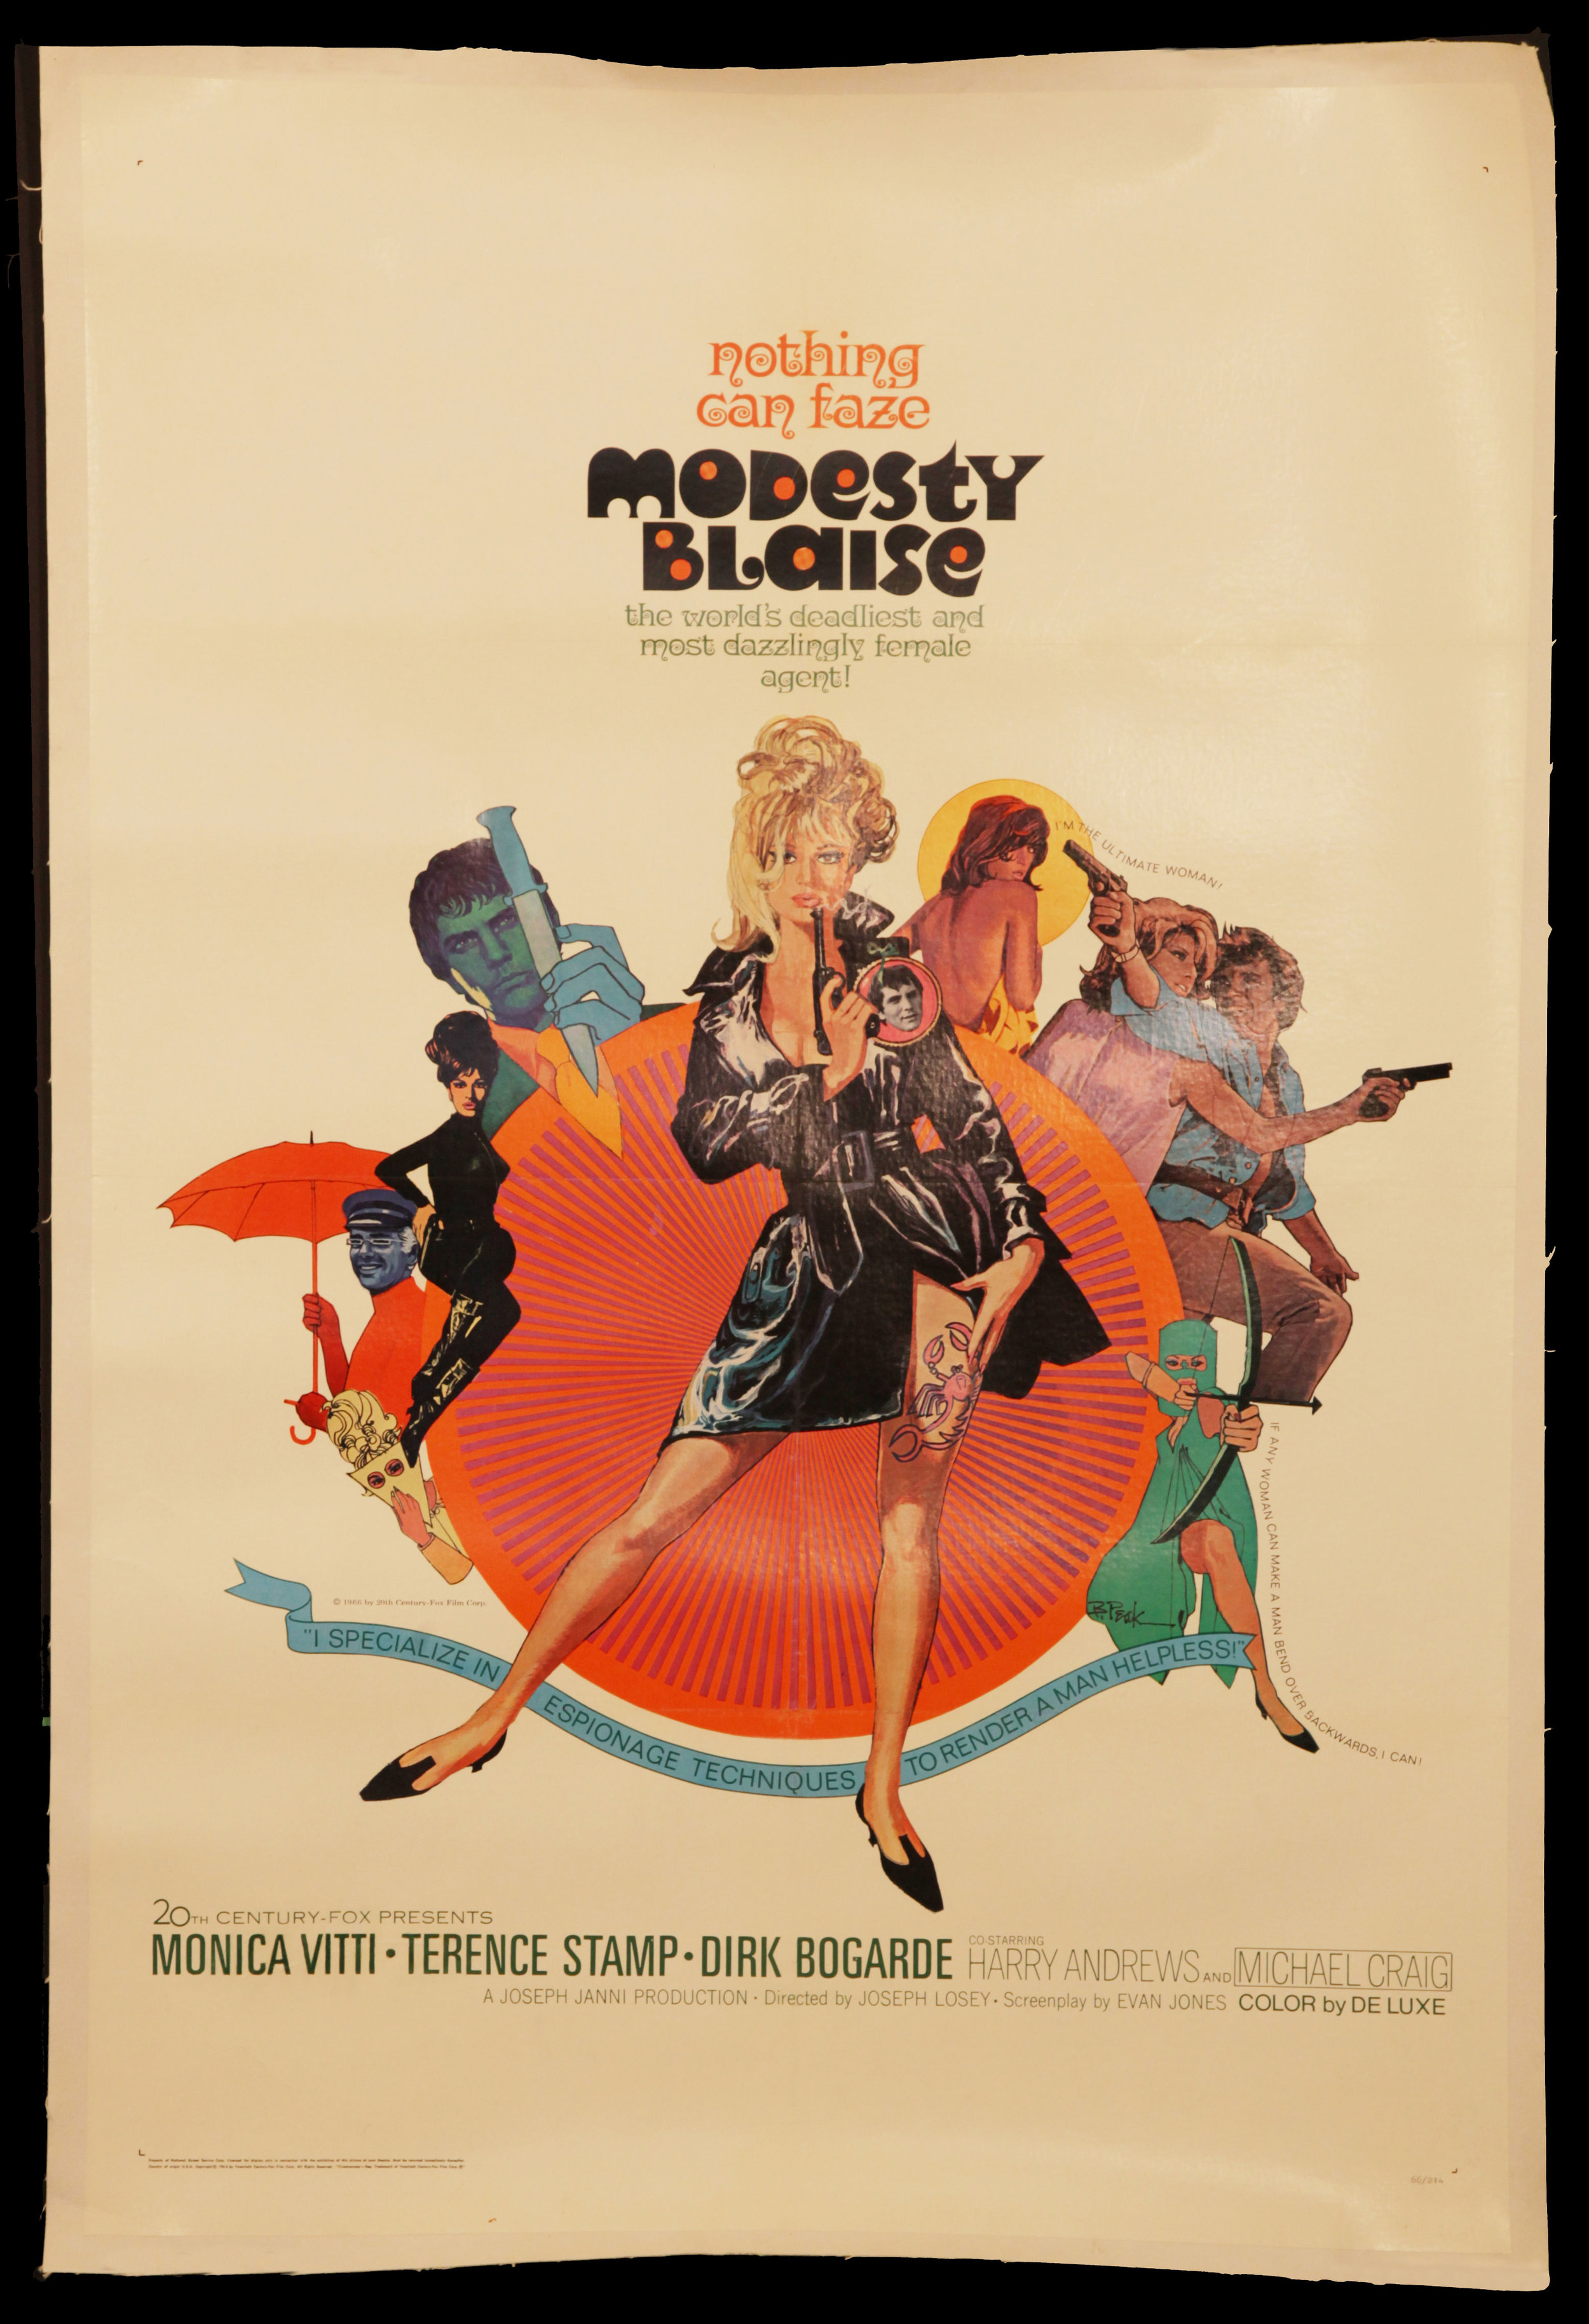 Modesy Blaise (1966)